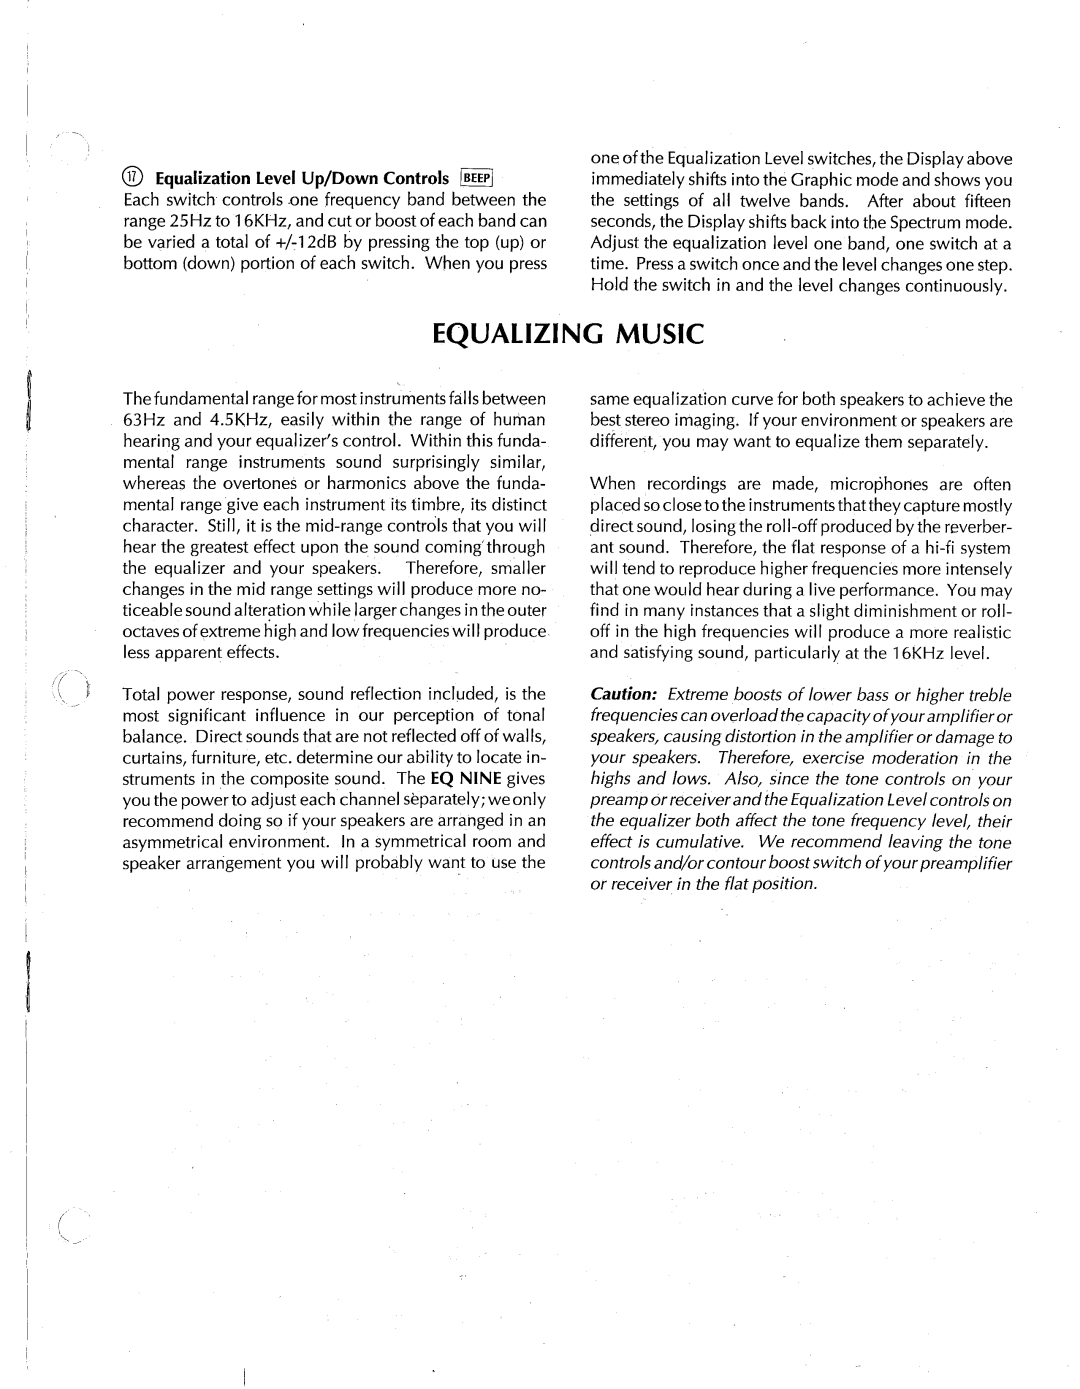 AudioSource Computerized Graphic Equalizer/Analyzer, EQ NINE manual 